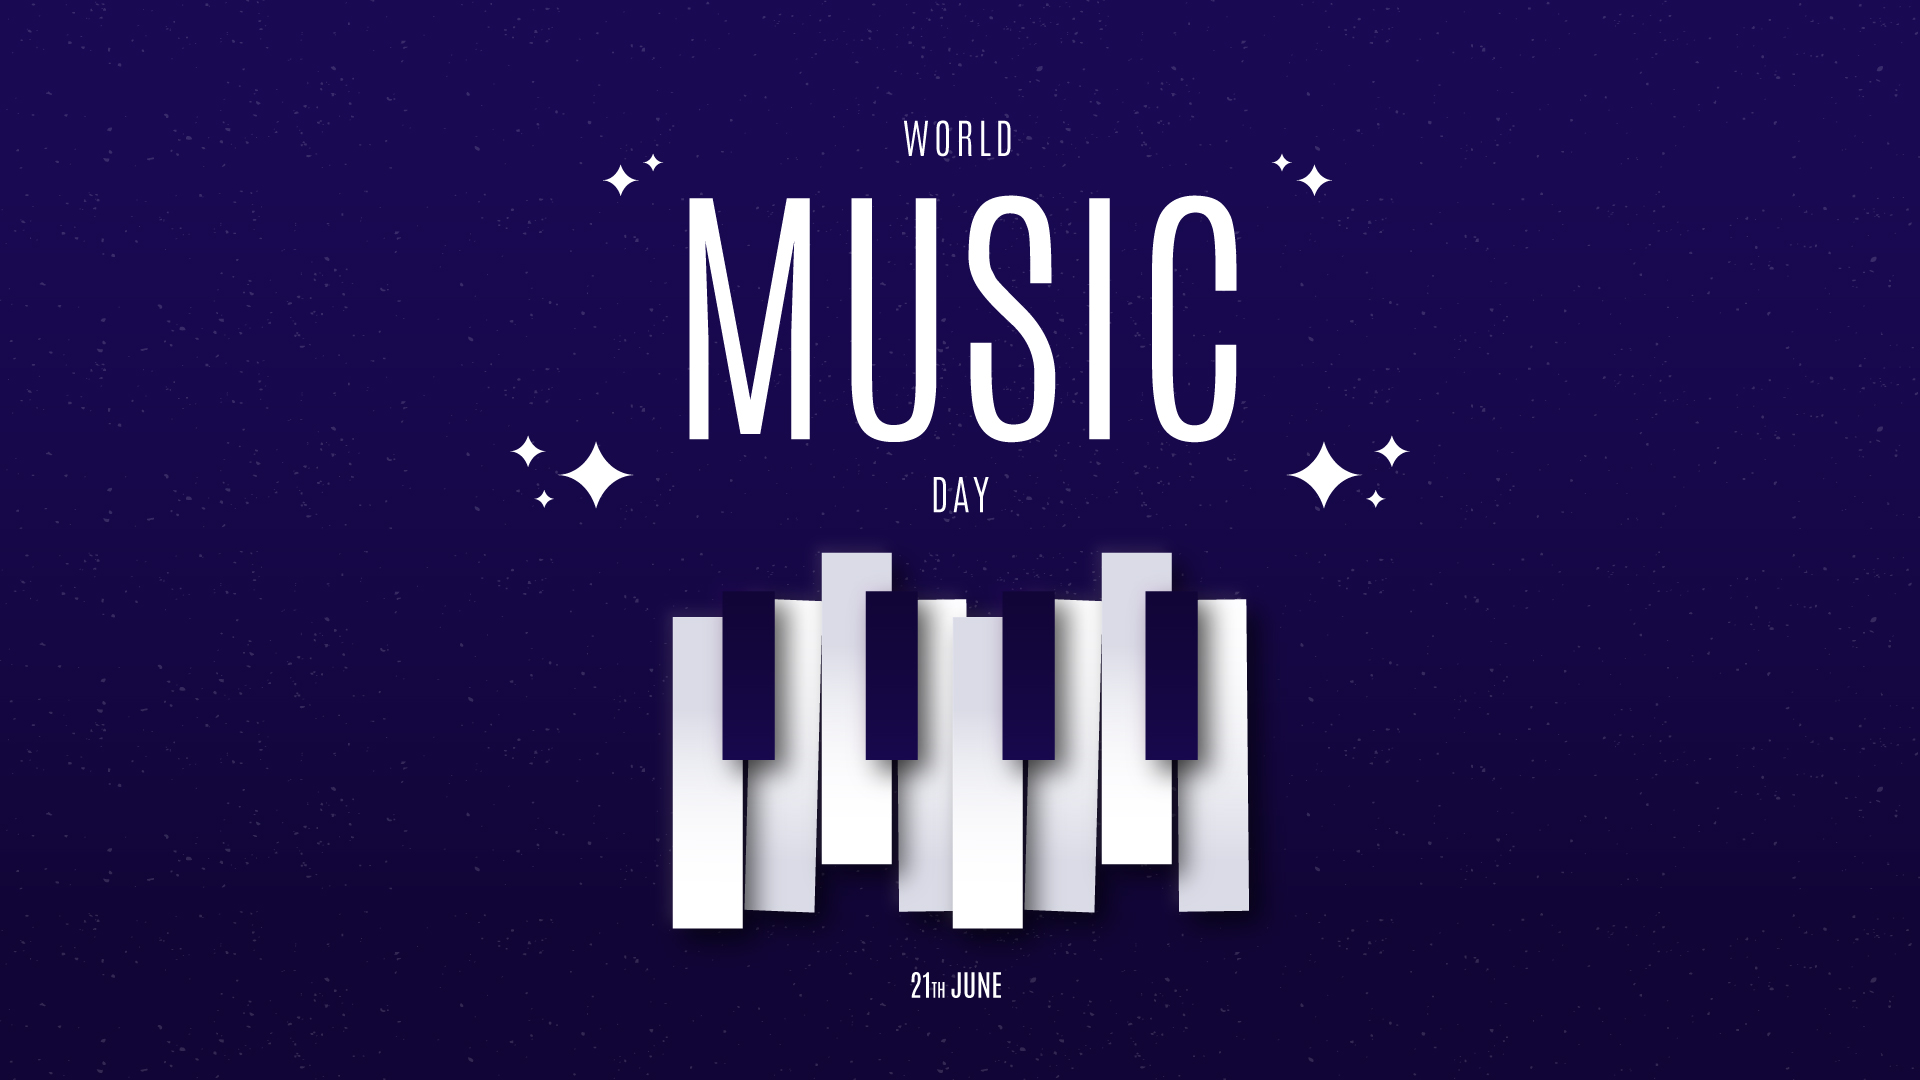 World Music Day 2021 – June 21